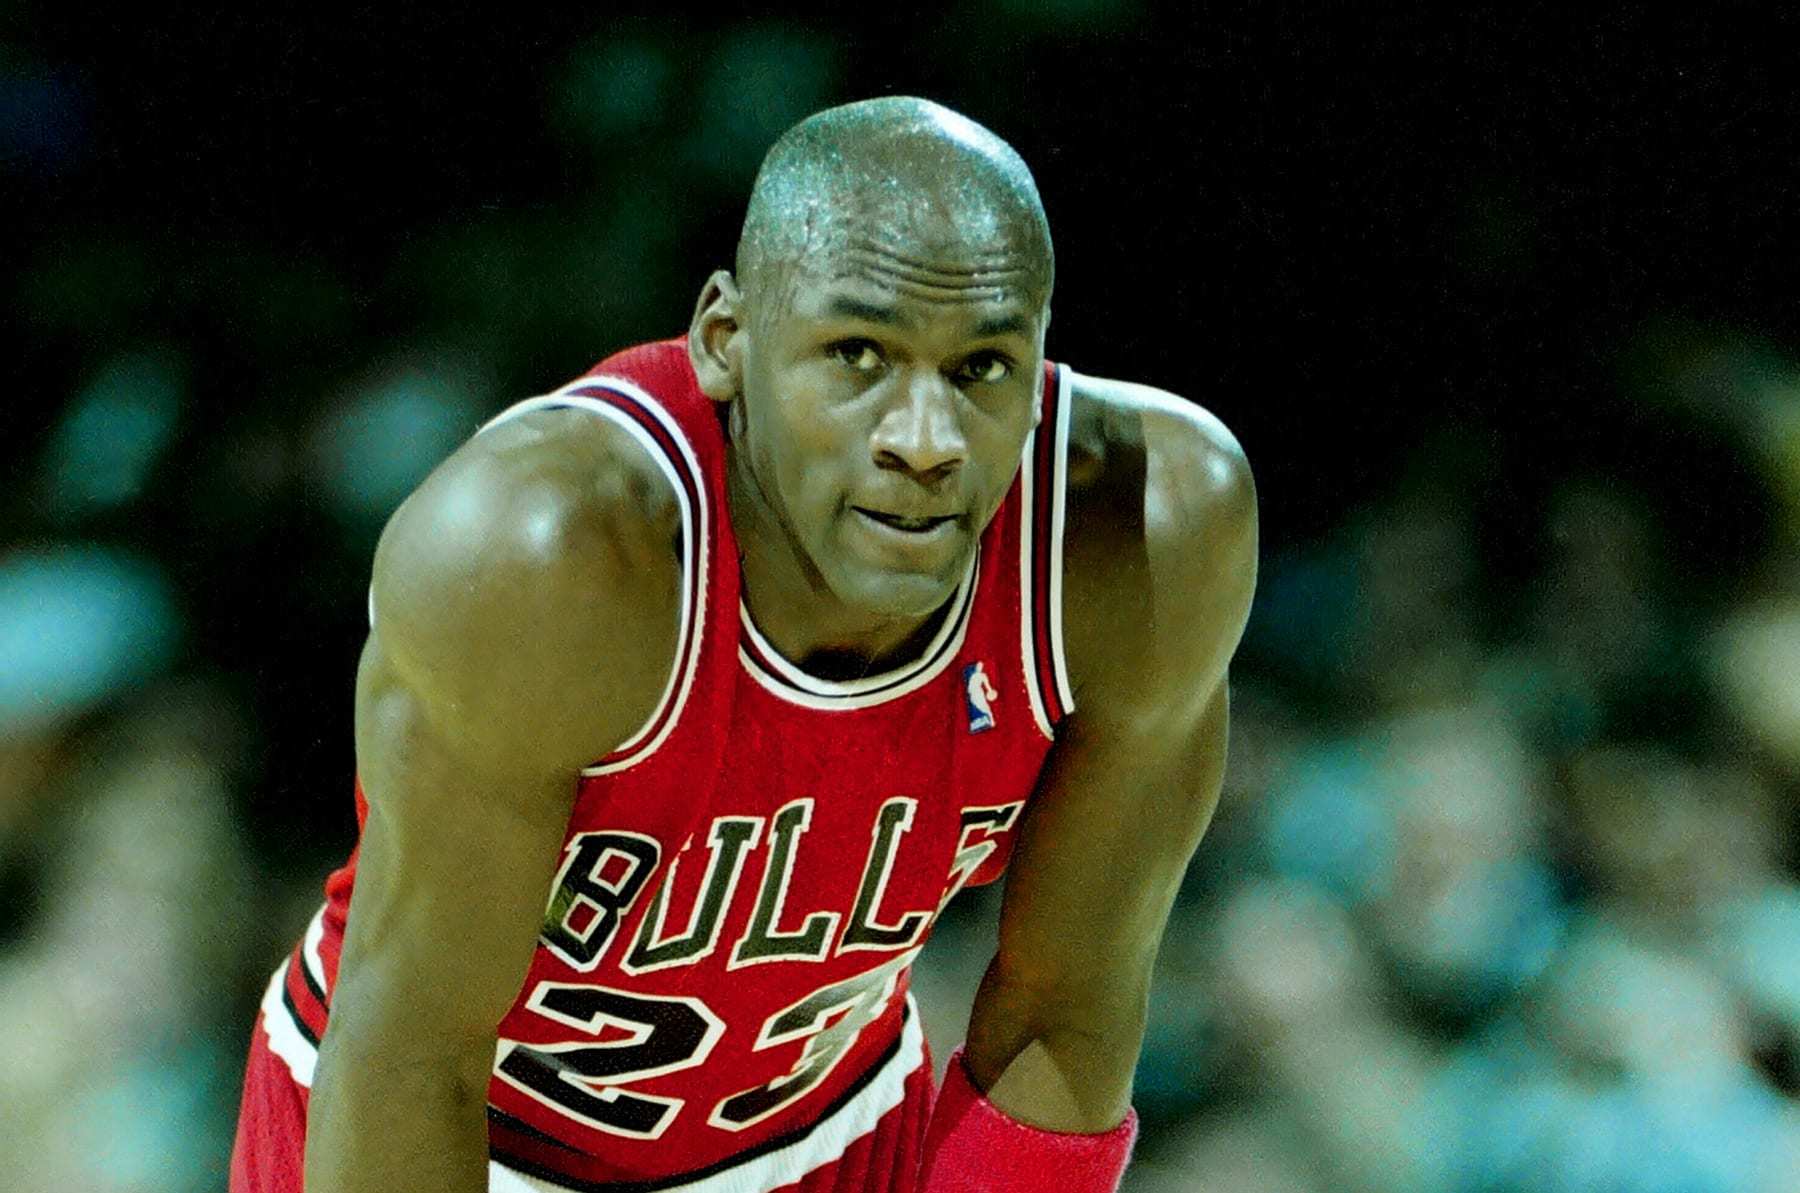 Michael Jordan's Last Dance trainers fetch auction record $2.2m